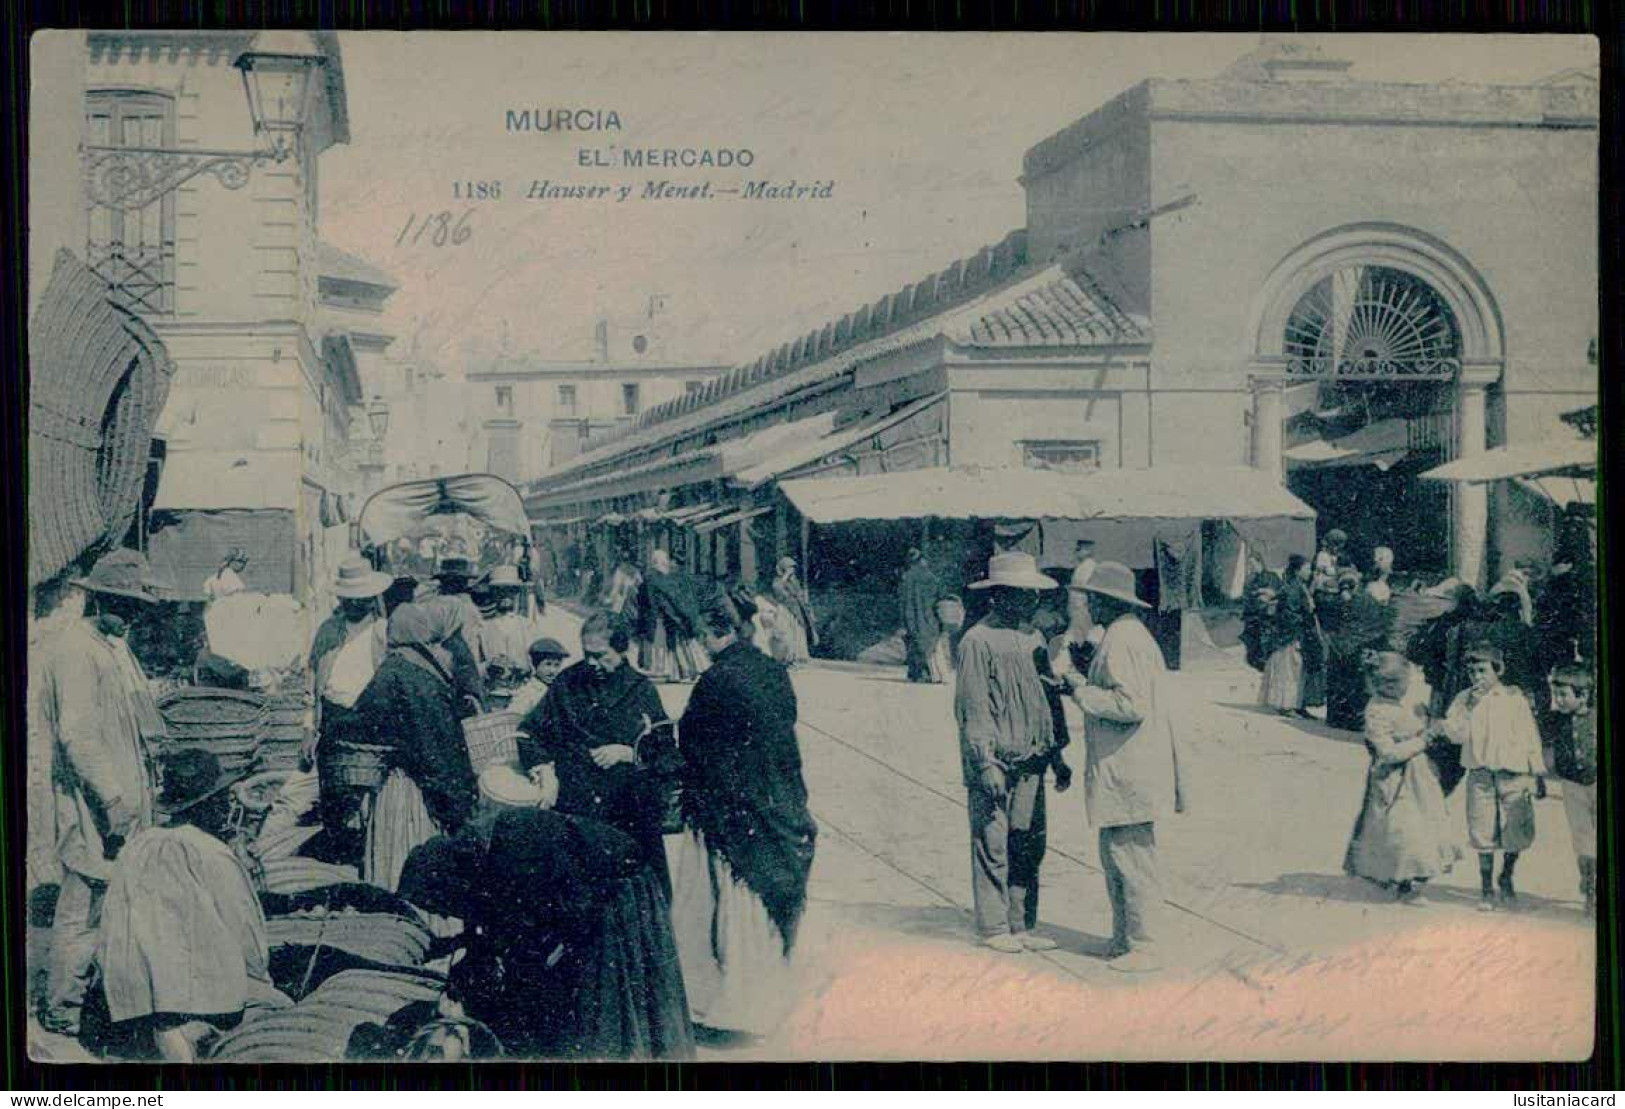 SPAIN - MURCIA - El Mercado. ( Ed. Hauser Y Menet Nº 1186)  Carte Postale - Marchés